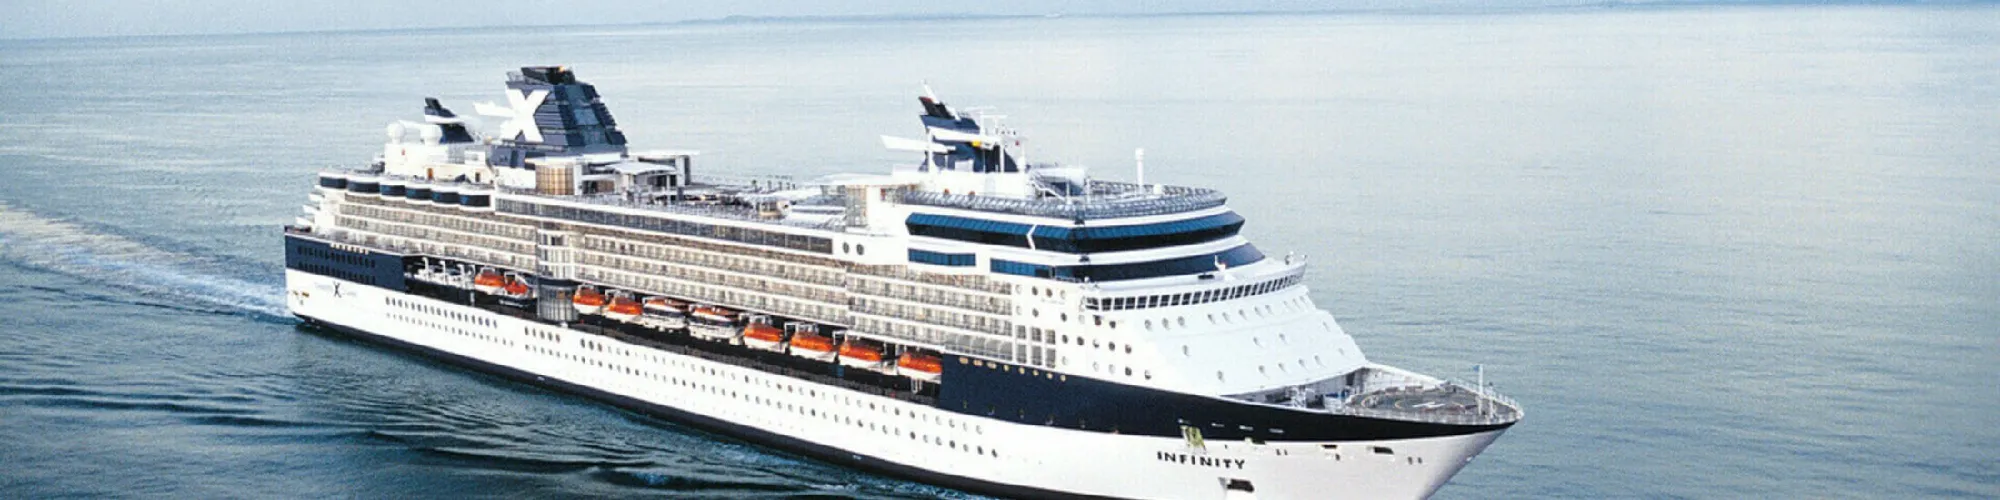 Celebrity Cruises Kreuzfahrten background image